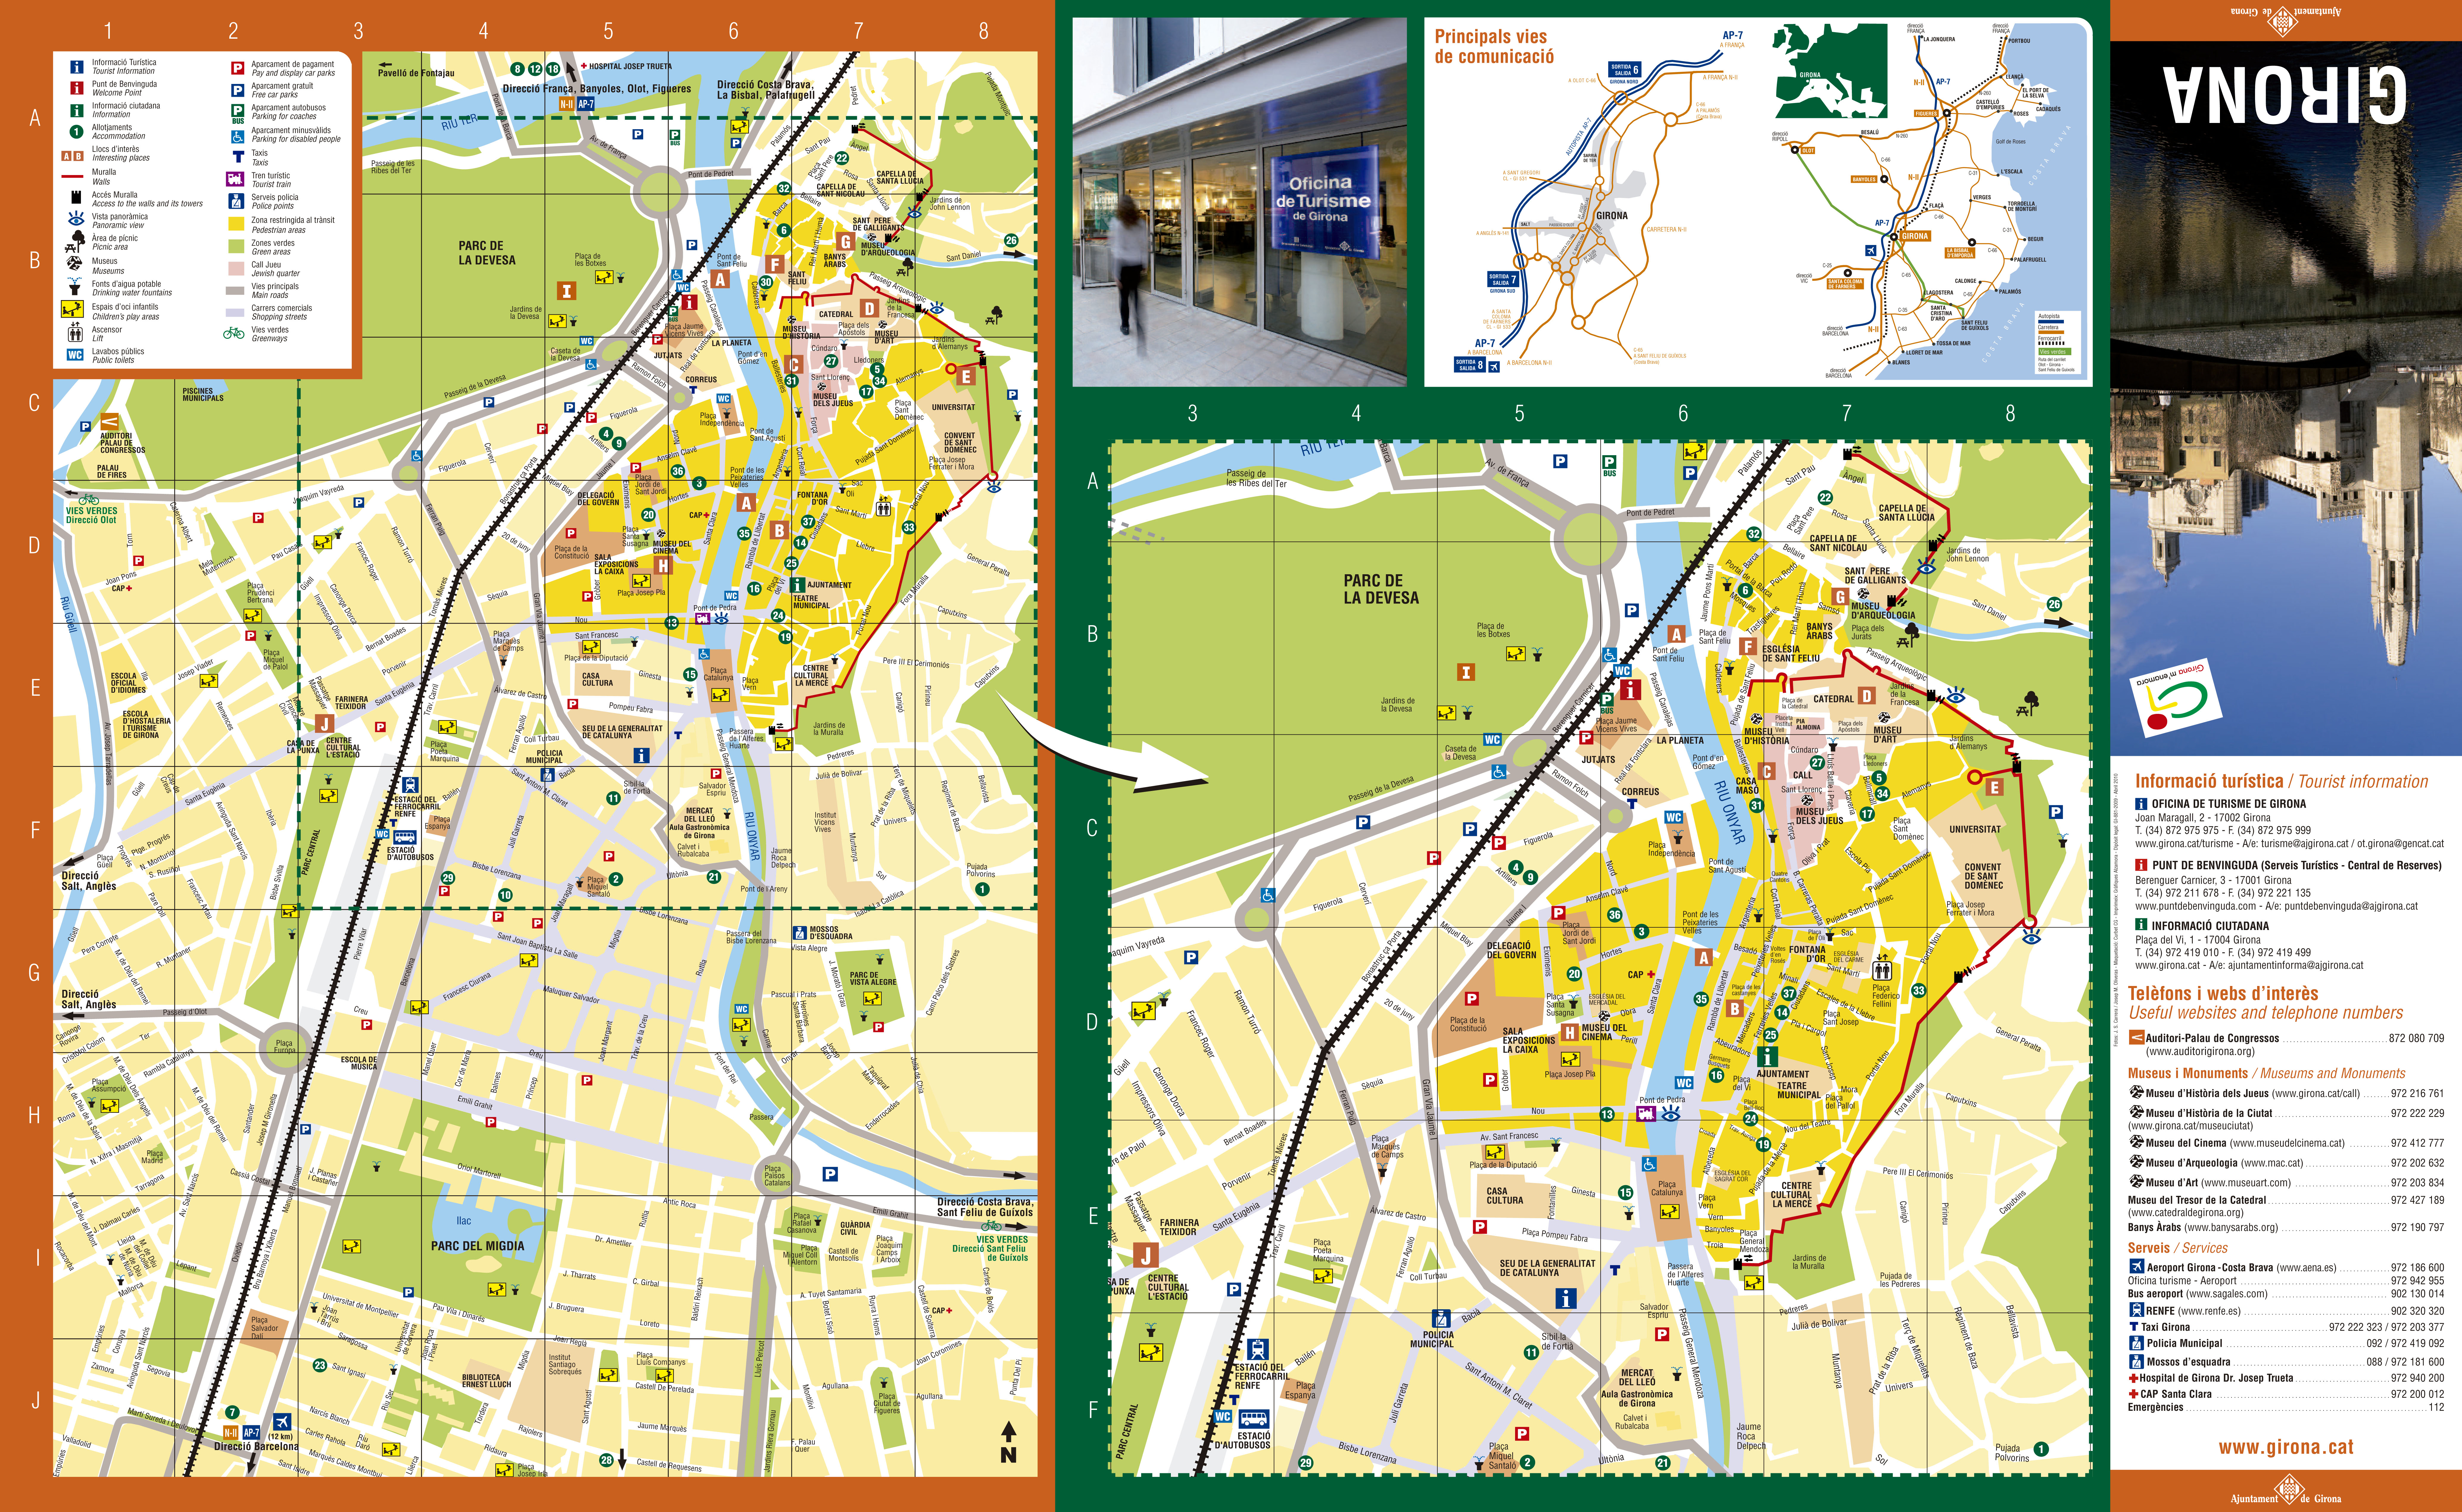 Girona Tourist Map 2010 Full Size